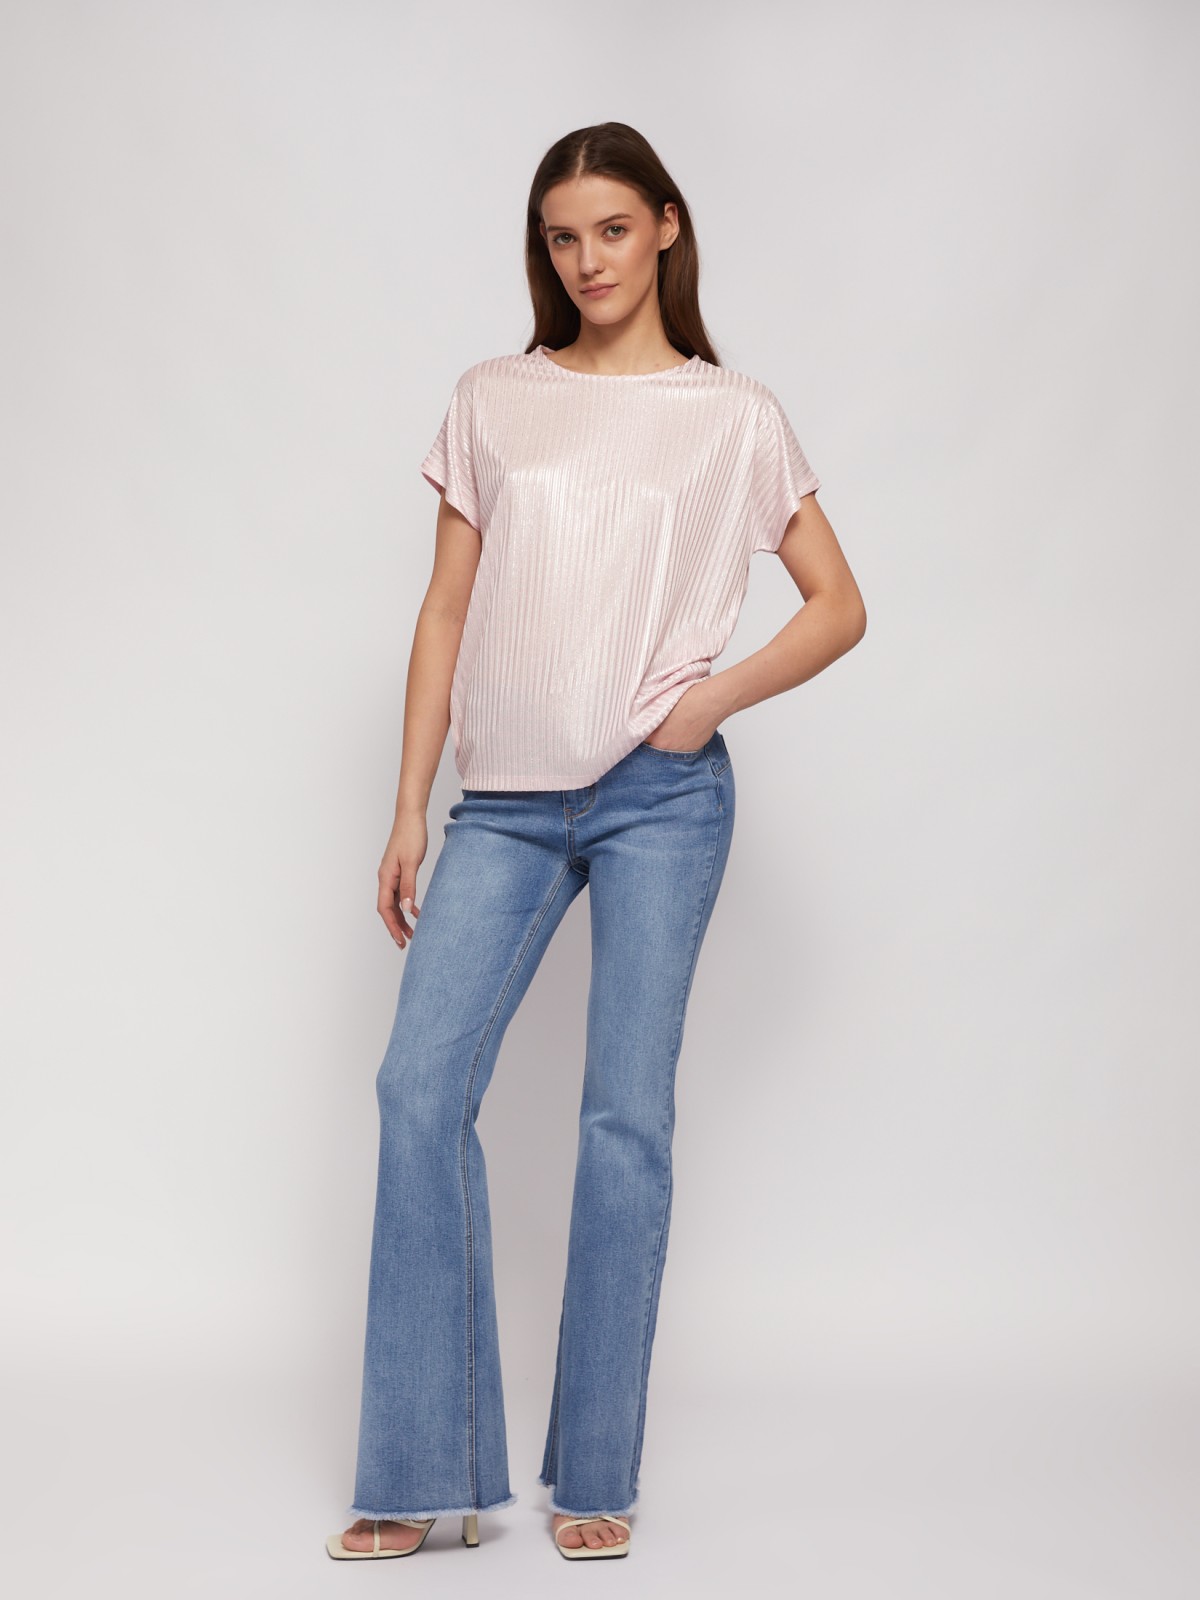 Трикотажный комбинированный топ-блузка с блеском zolla 024223226033, цвет розовый, размер XS - фото 2